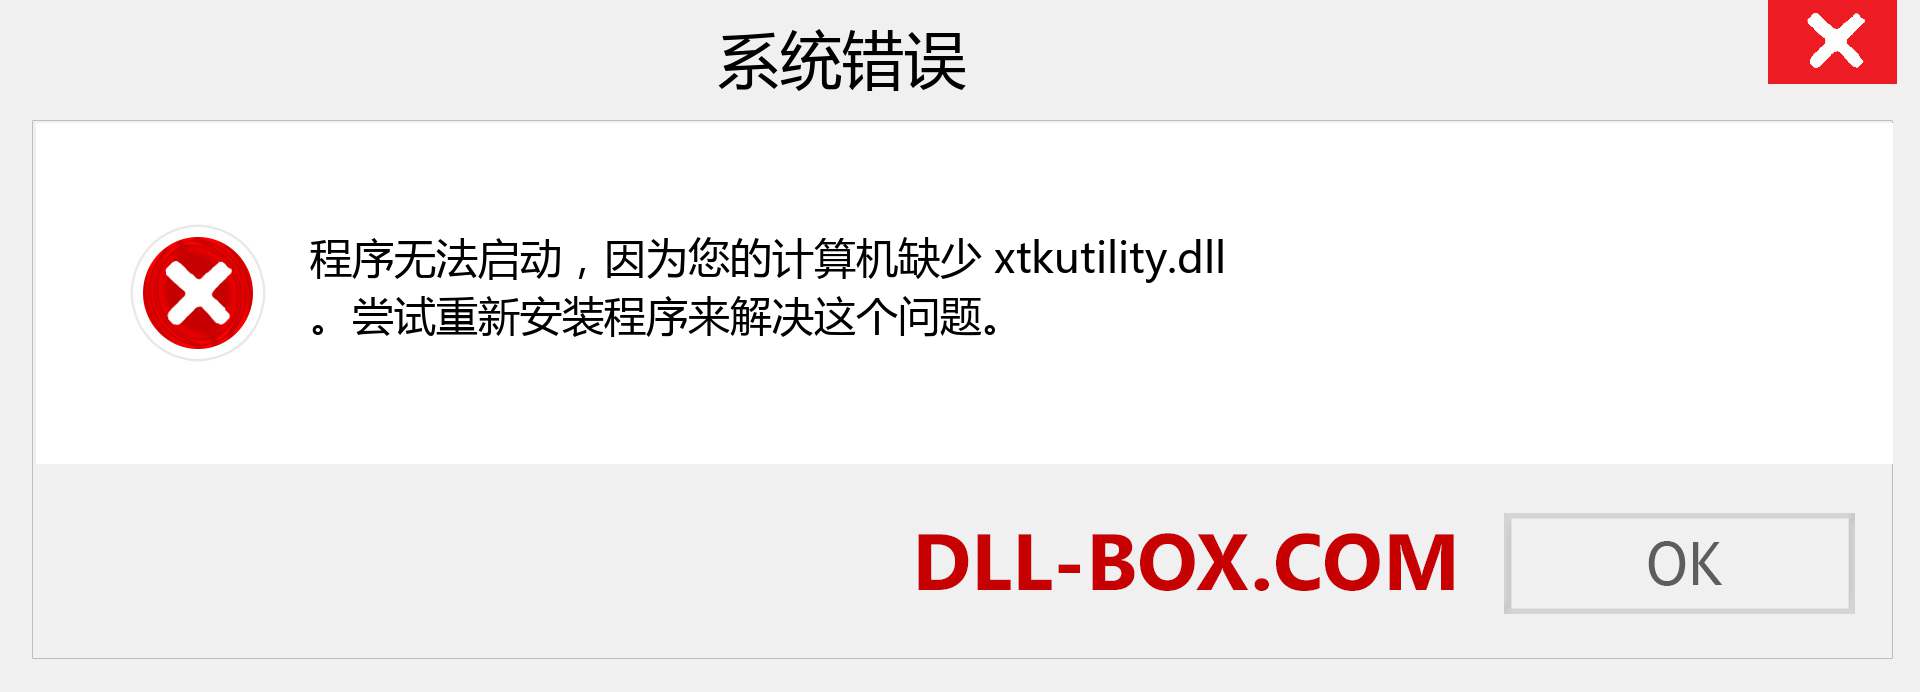 xtkutility.dll 文件丢失？。 适用于 Windows 7、8、10 的下载 - 修复 Windows、照片、图像上的 xtkutility dll 丢失错误